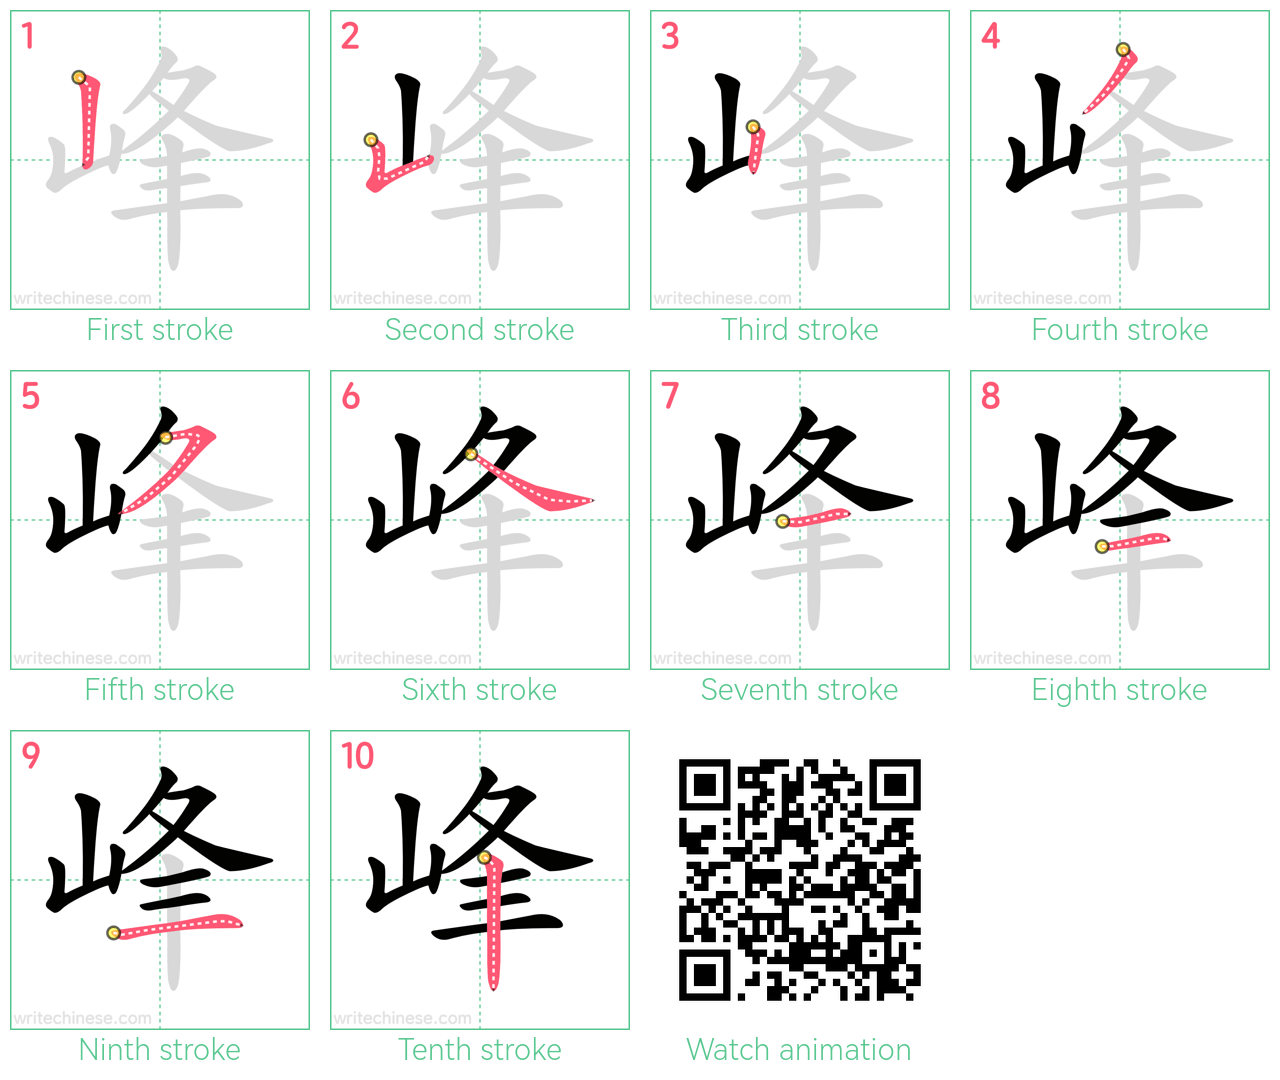 峰 step-by-step stroke order diagrams